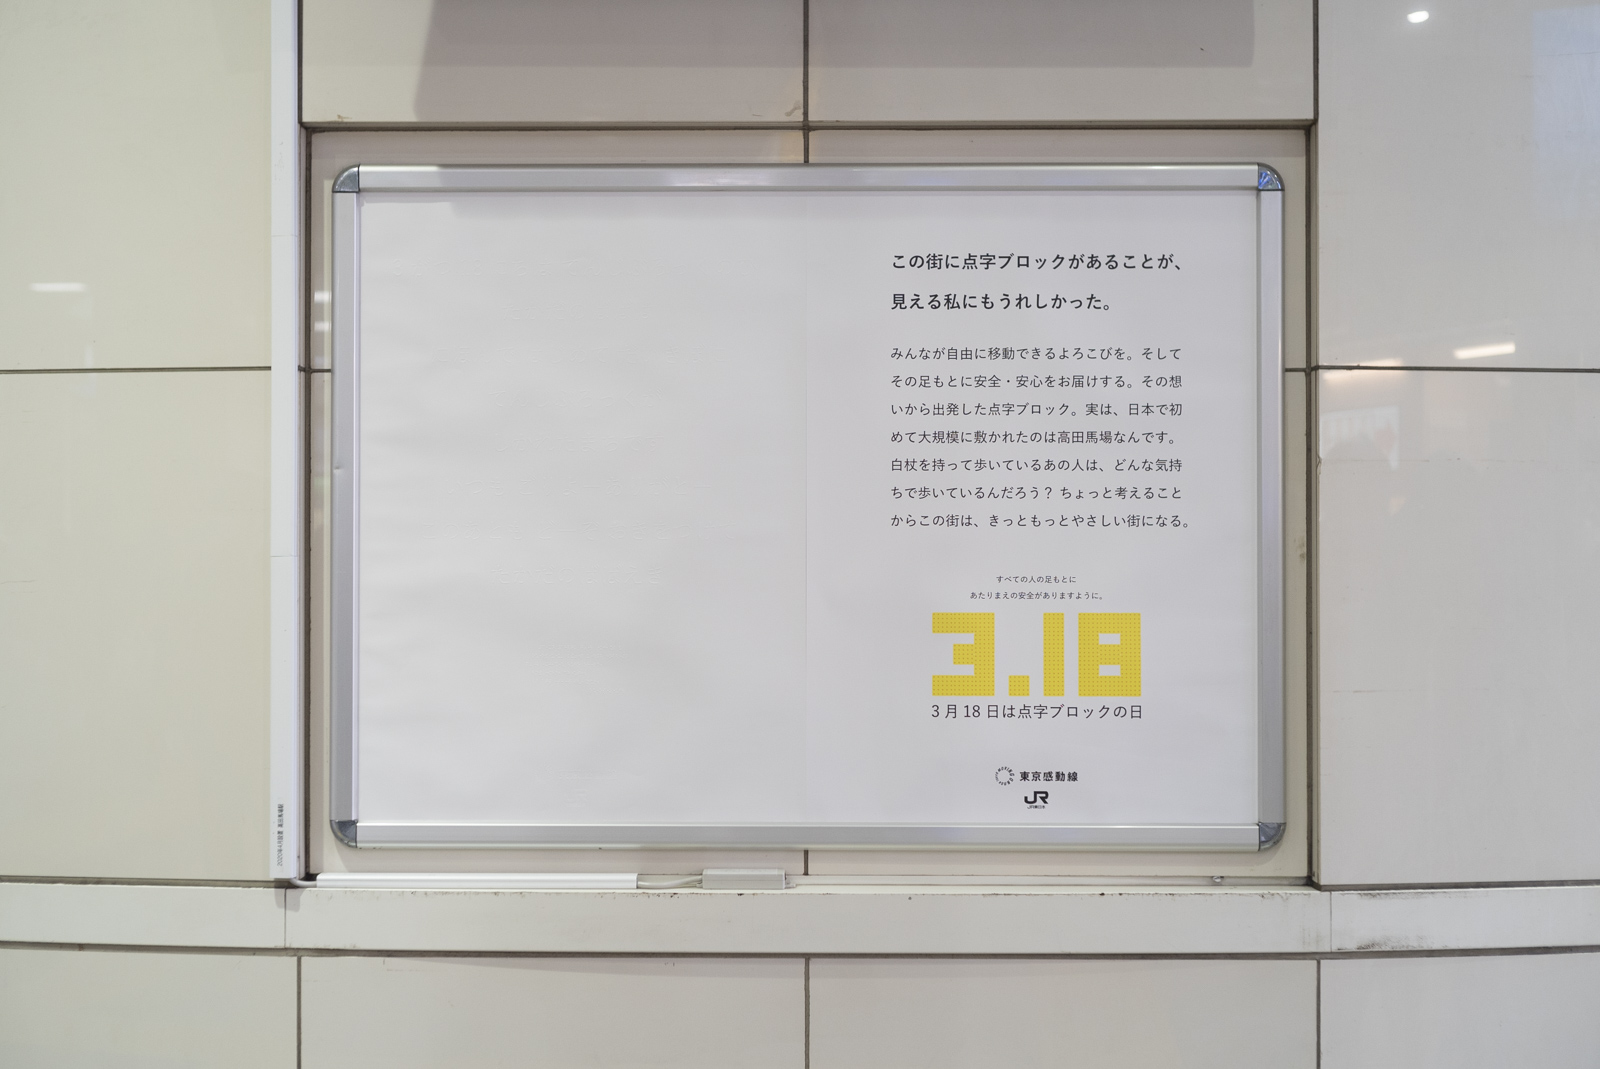 ジェイアールたかだのばば駅に掲示された真っ白なポスターの写真。ポスターの左側には浮き出し文字でメッセージがかかれています